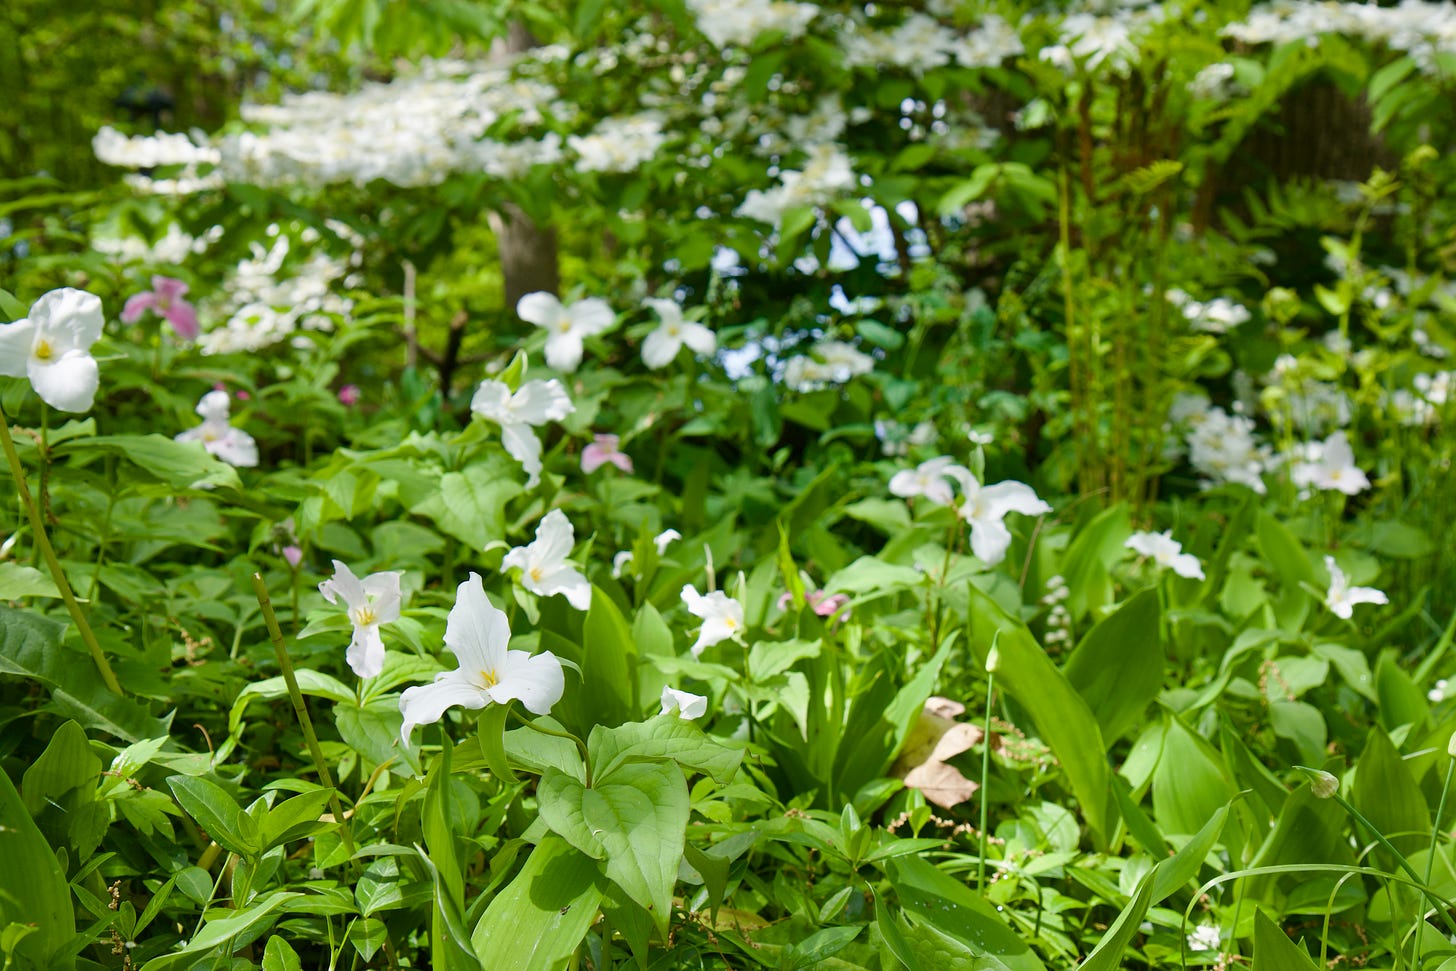 Great White Trillium (Trillium grandiflorum) with the Doublefile Viburnum (Viburnum plicatum tomentosum mariesii).